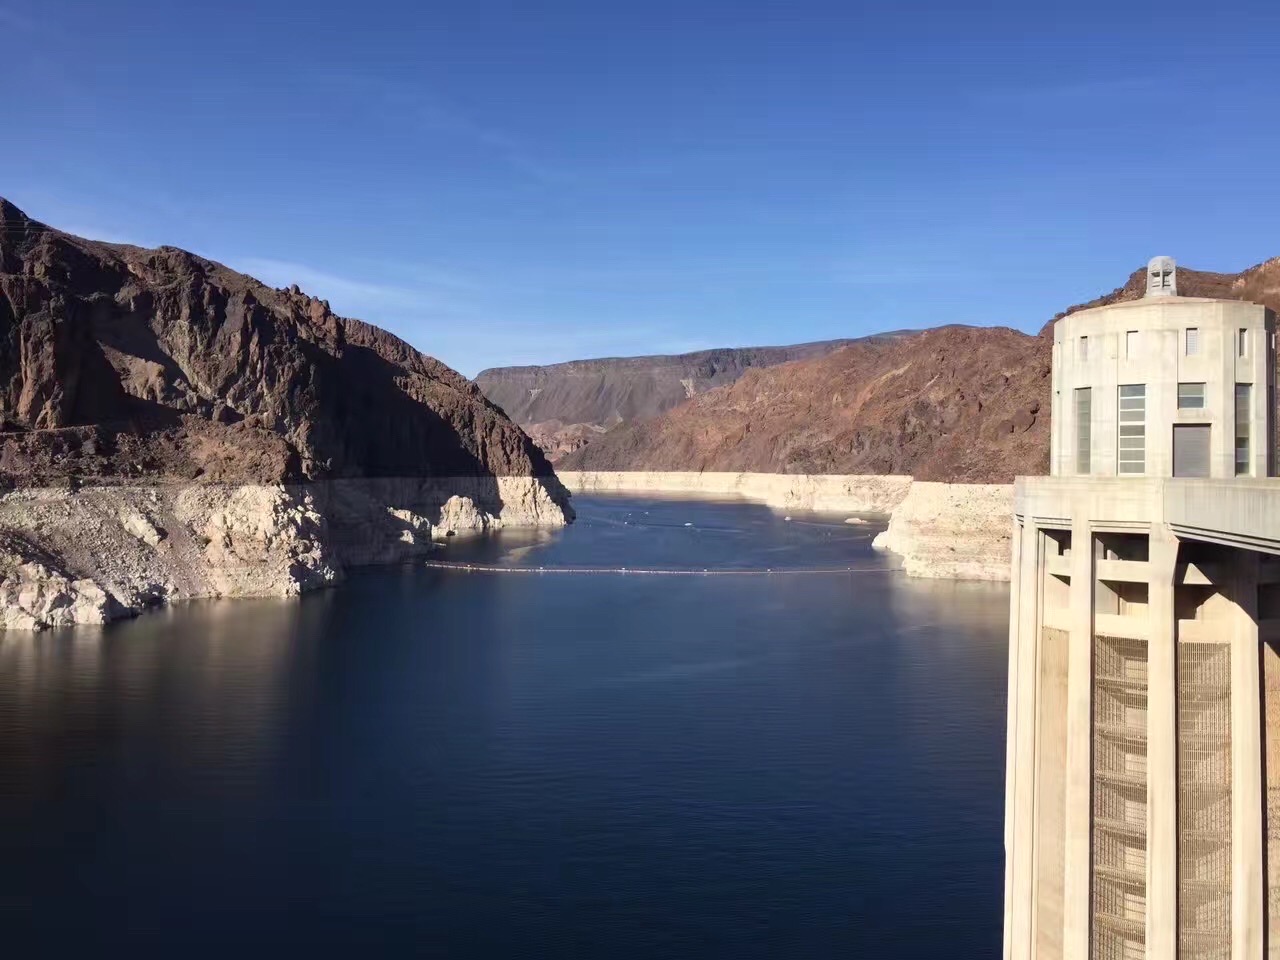 las vegas周边的胡佛水坝，工程非常浩大壮观，完美地演绎了人类的智慧，可以说是西方都江堰，但更